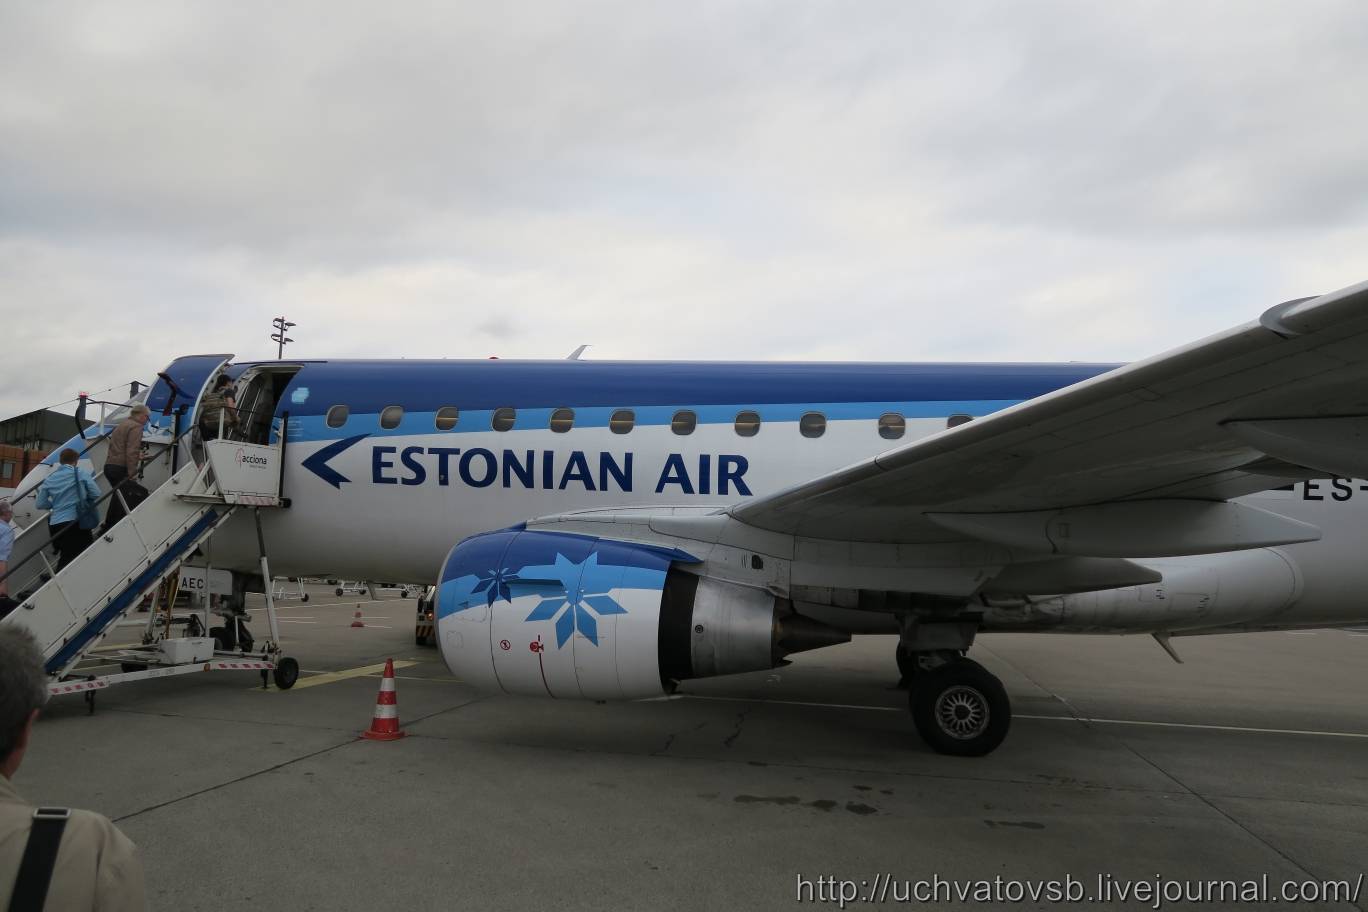 Estonian airсодержание а также история [ править ]